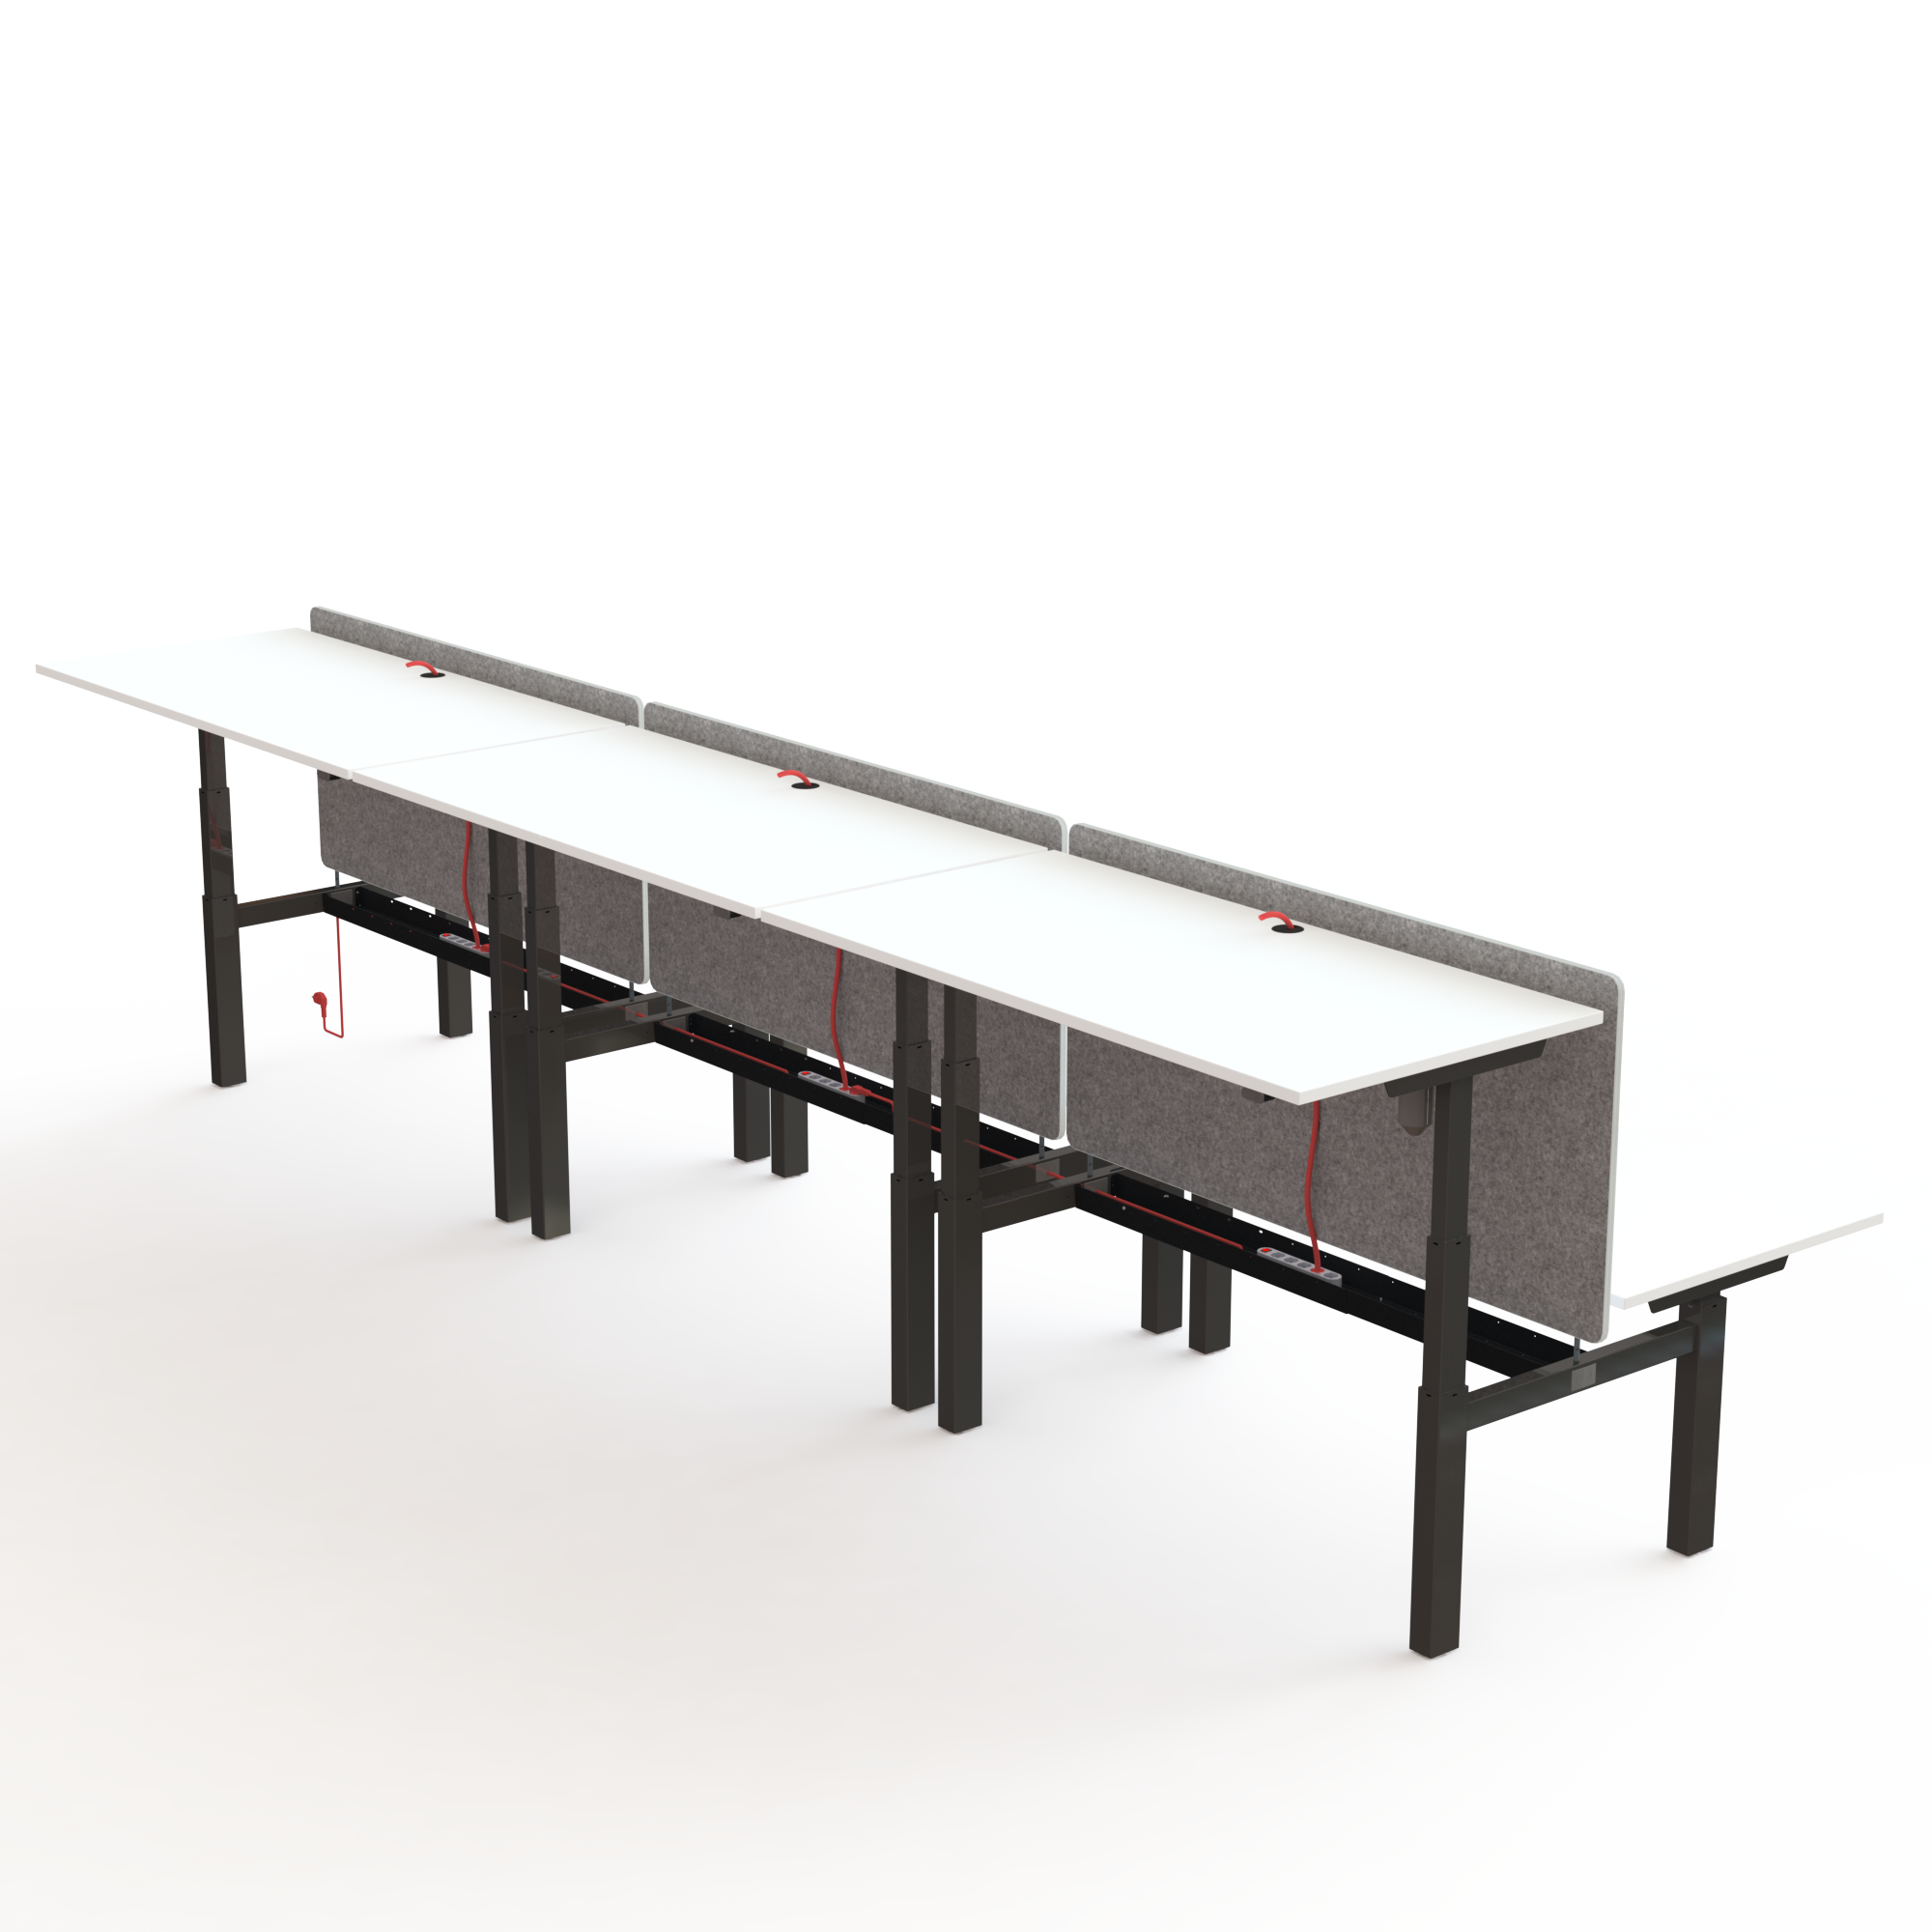 Hæve-/sænkebord | 120x60 cm | Hvid med sort stel